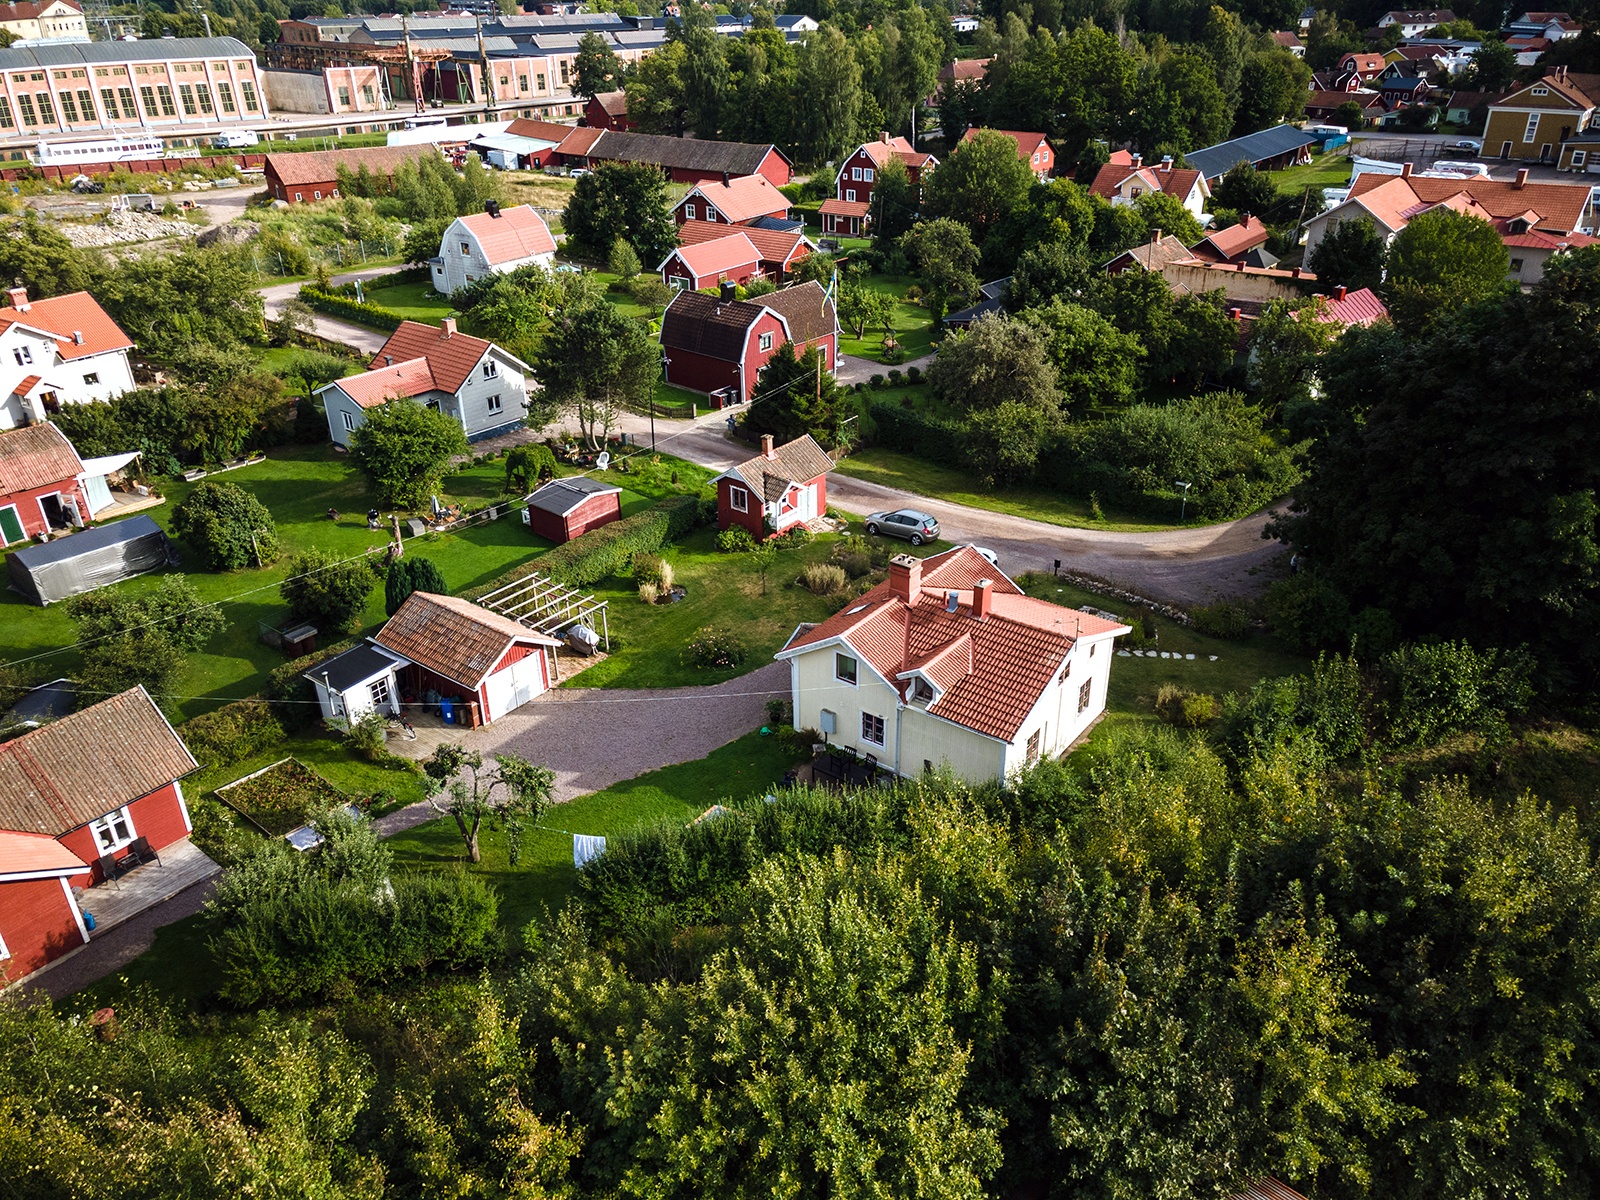 Drönarbild över villaområde i närheten av Göta kanal.